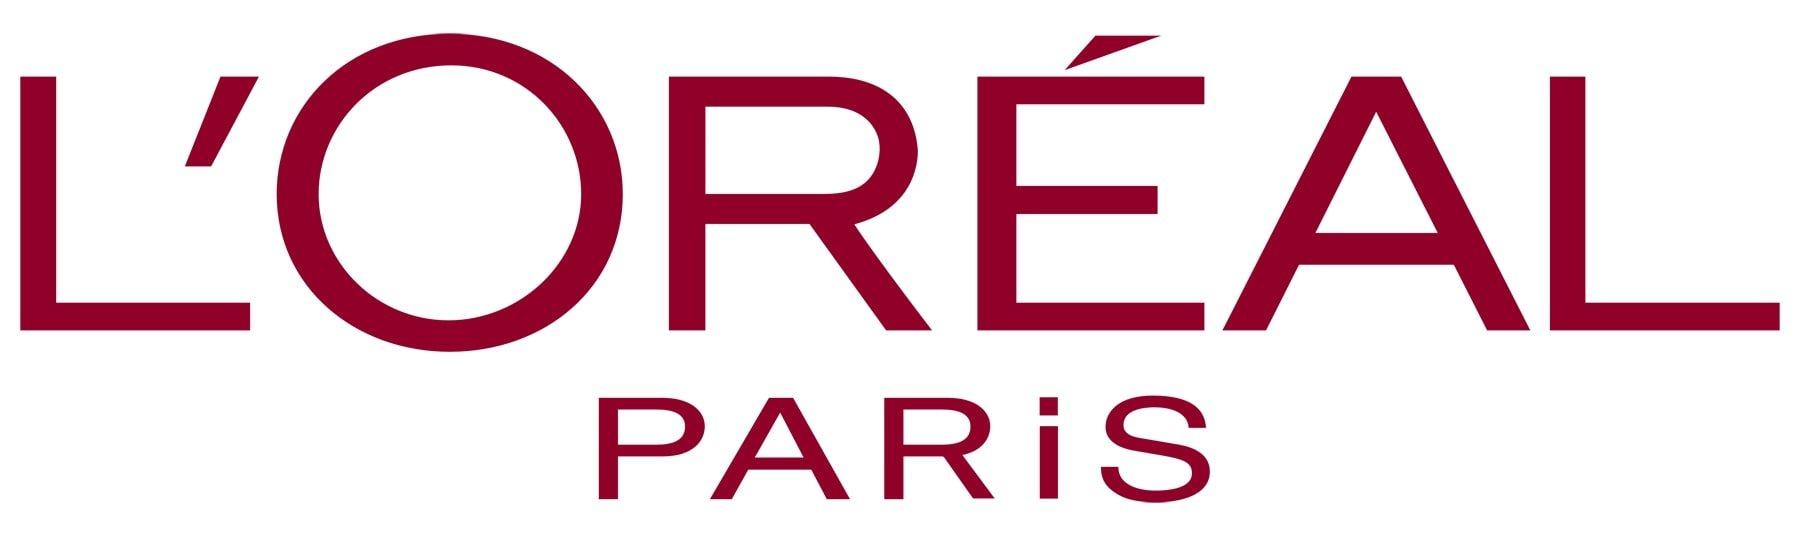 L'oreal Paris là một thương hiệu mỹ phẩm uy tín thuộc tập đoàn L'oreal (Nguồn: Internet)